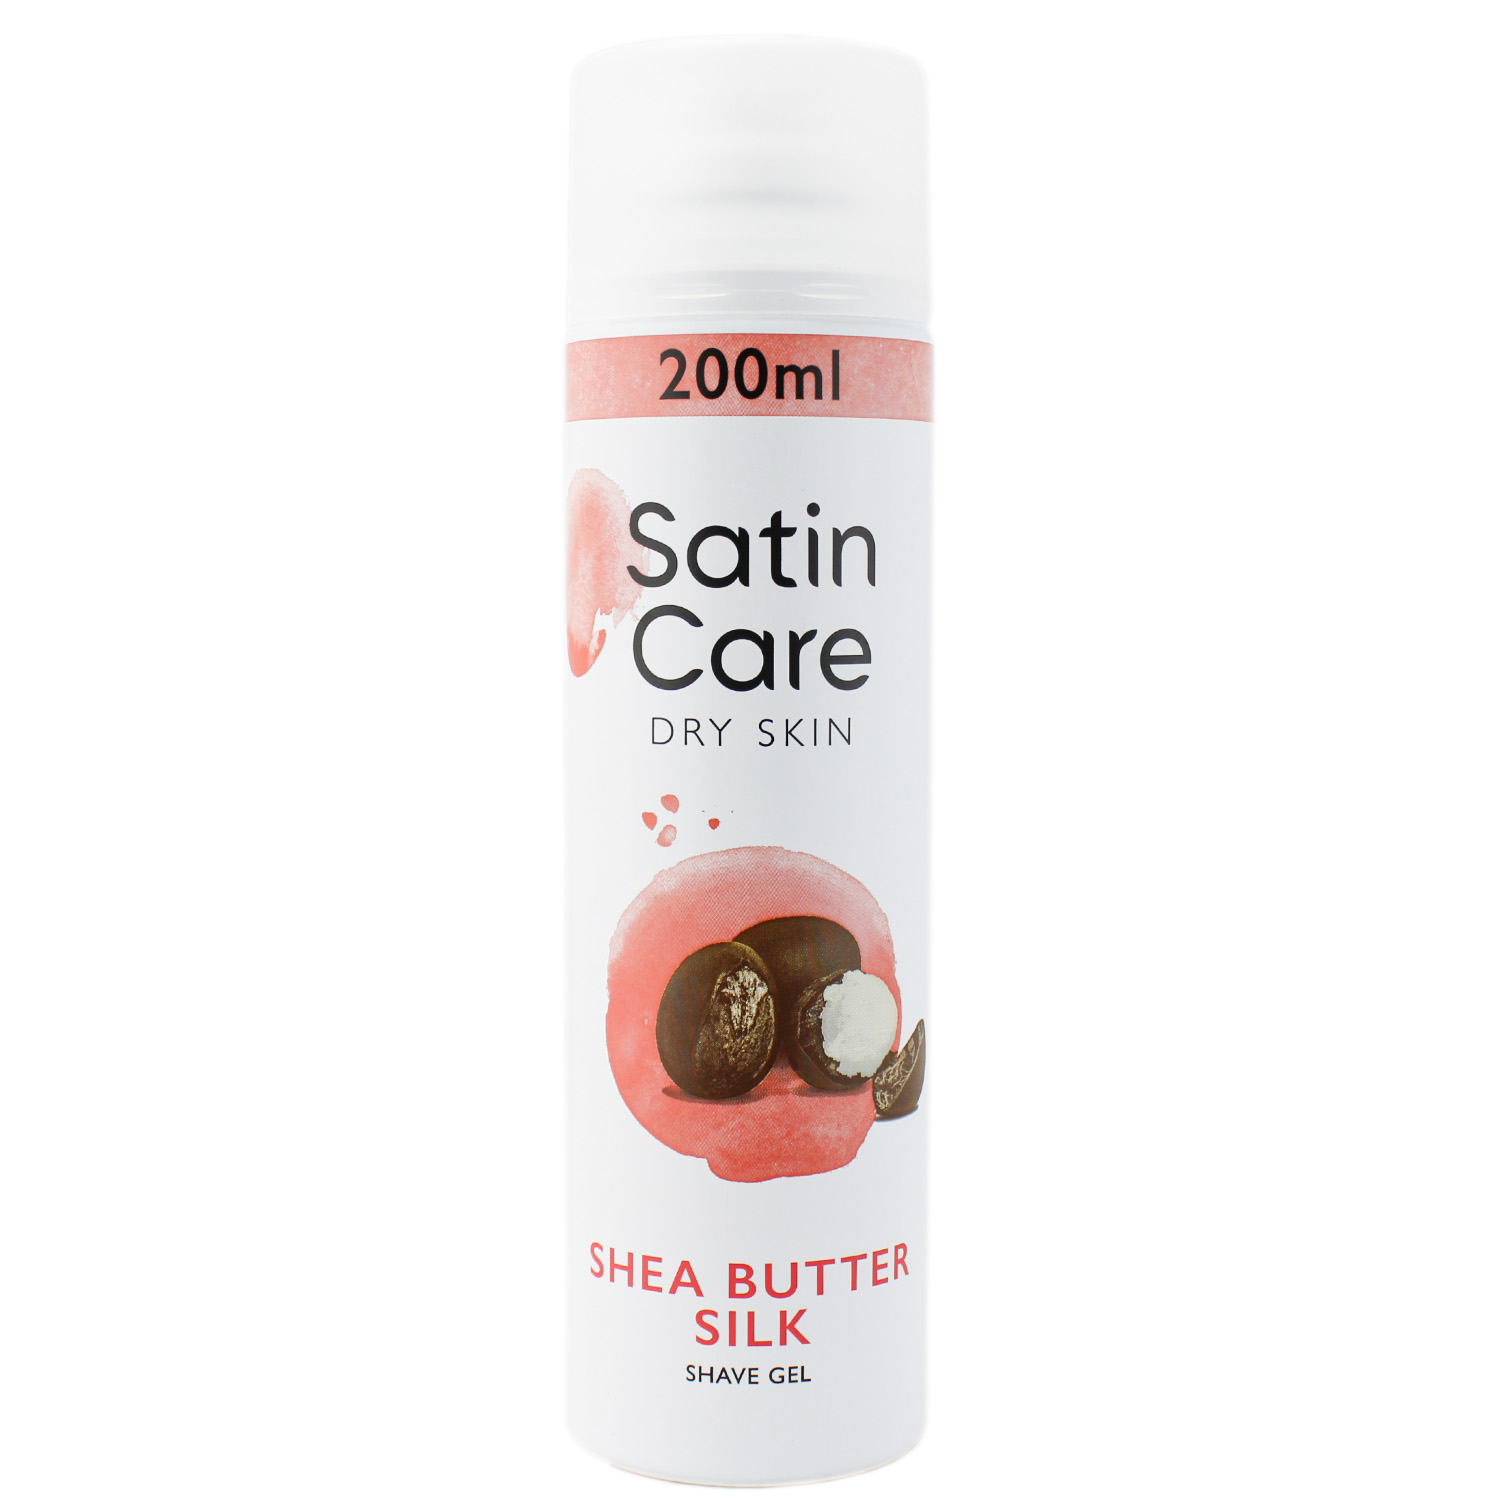 Gillette Satin Care Dry Skin Shea Butter Silk Rasiergel 200ml